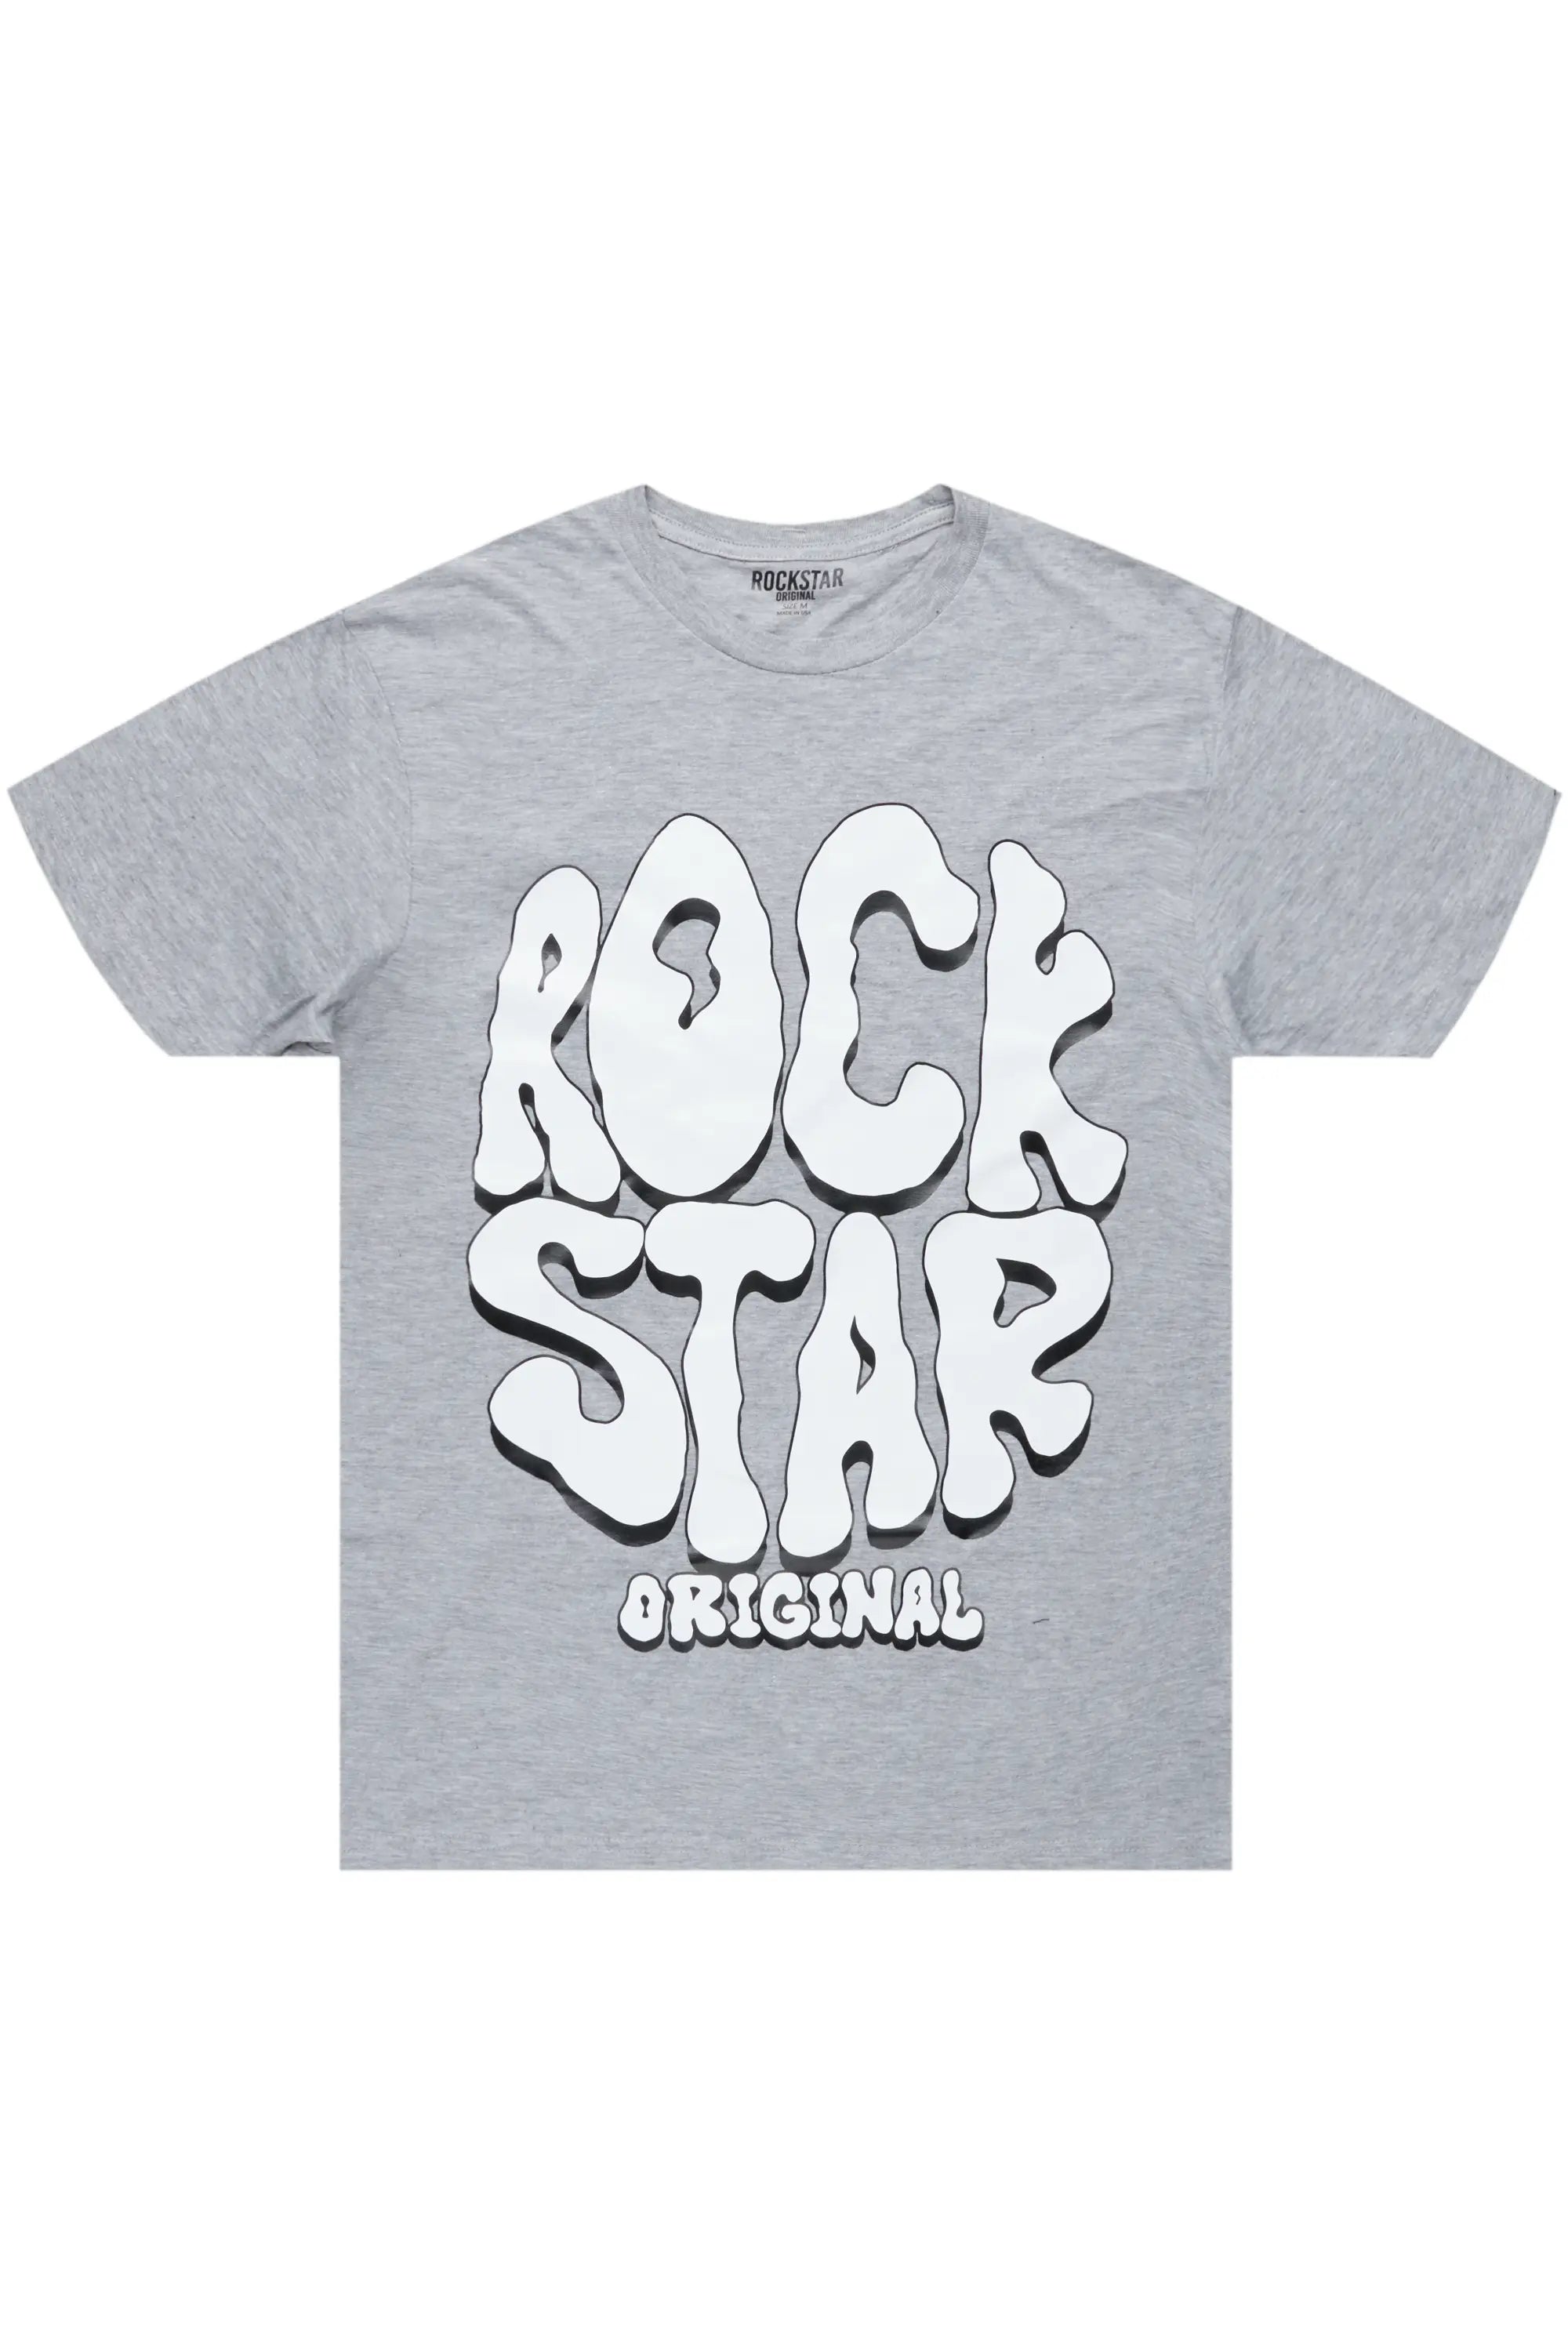 Warblen Grey Graphic T-Shirt